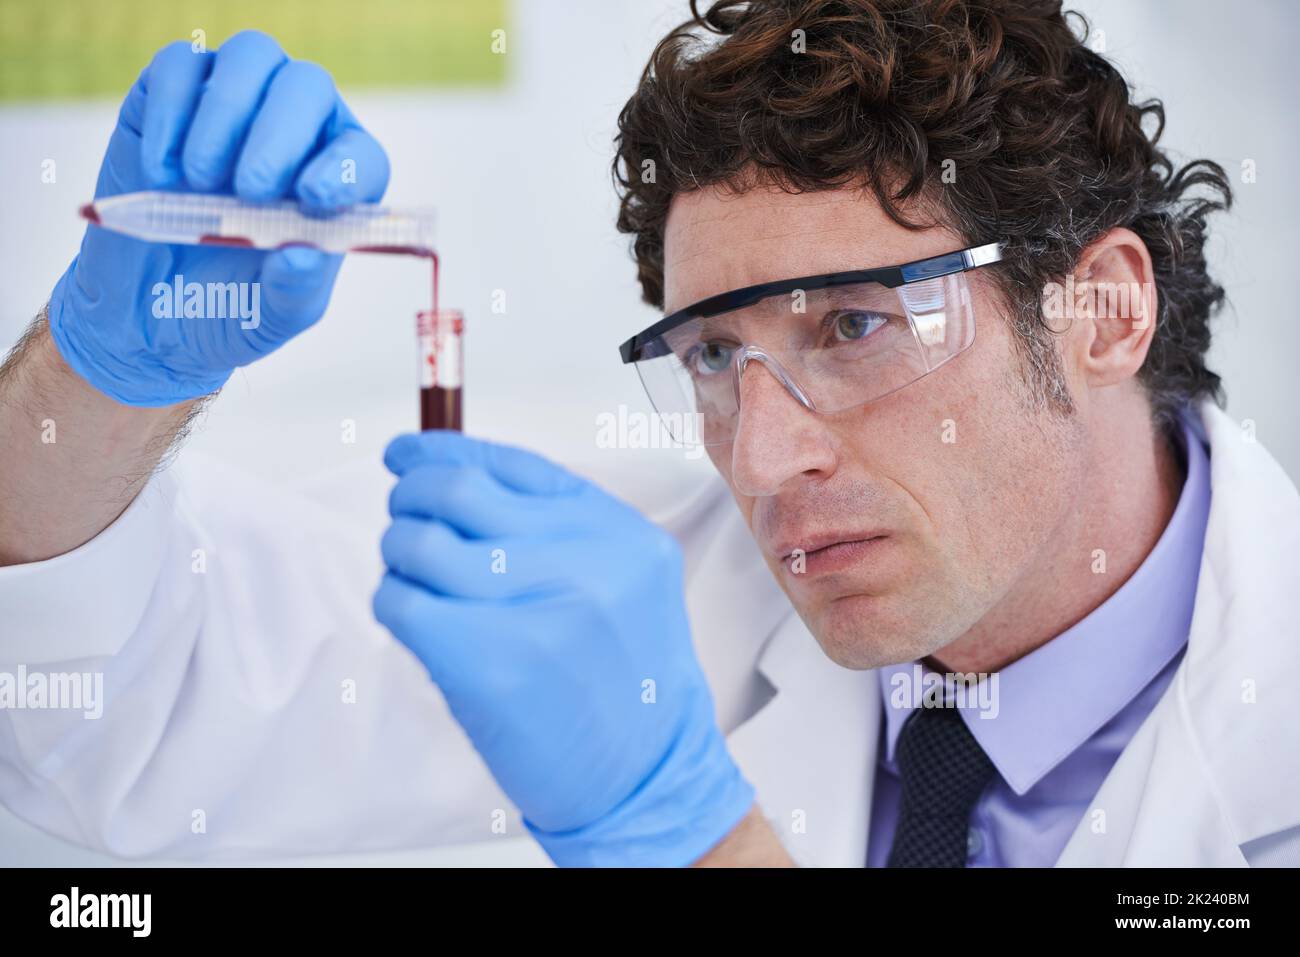 Ogni innovazione inizia con un semplice esperimento... Uno scienziato che guarda un campione in una provetta. Foto Stock